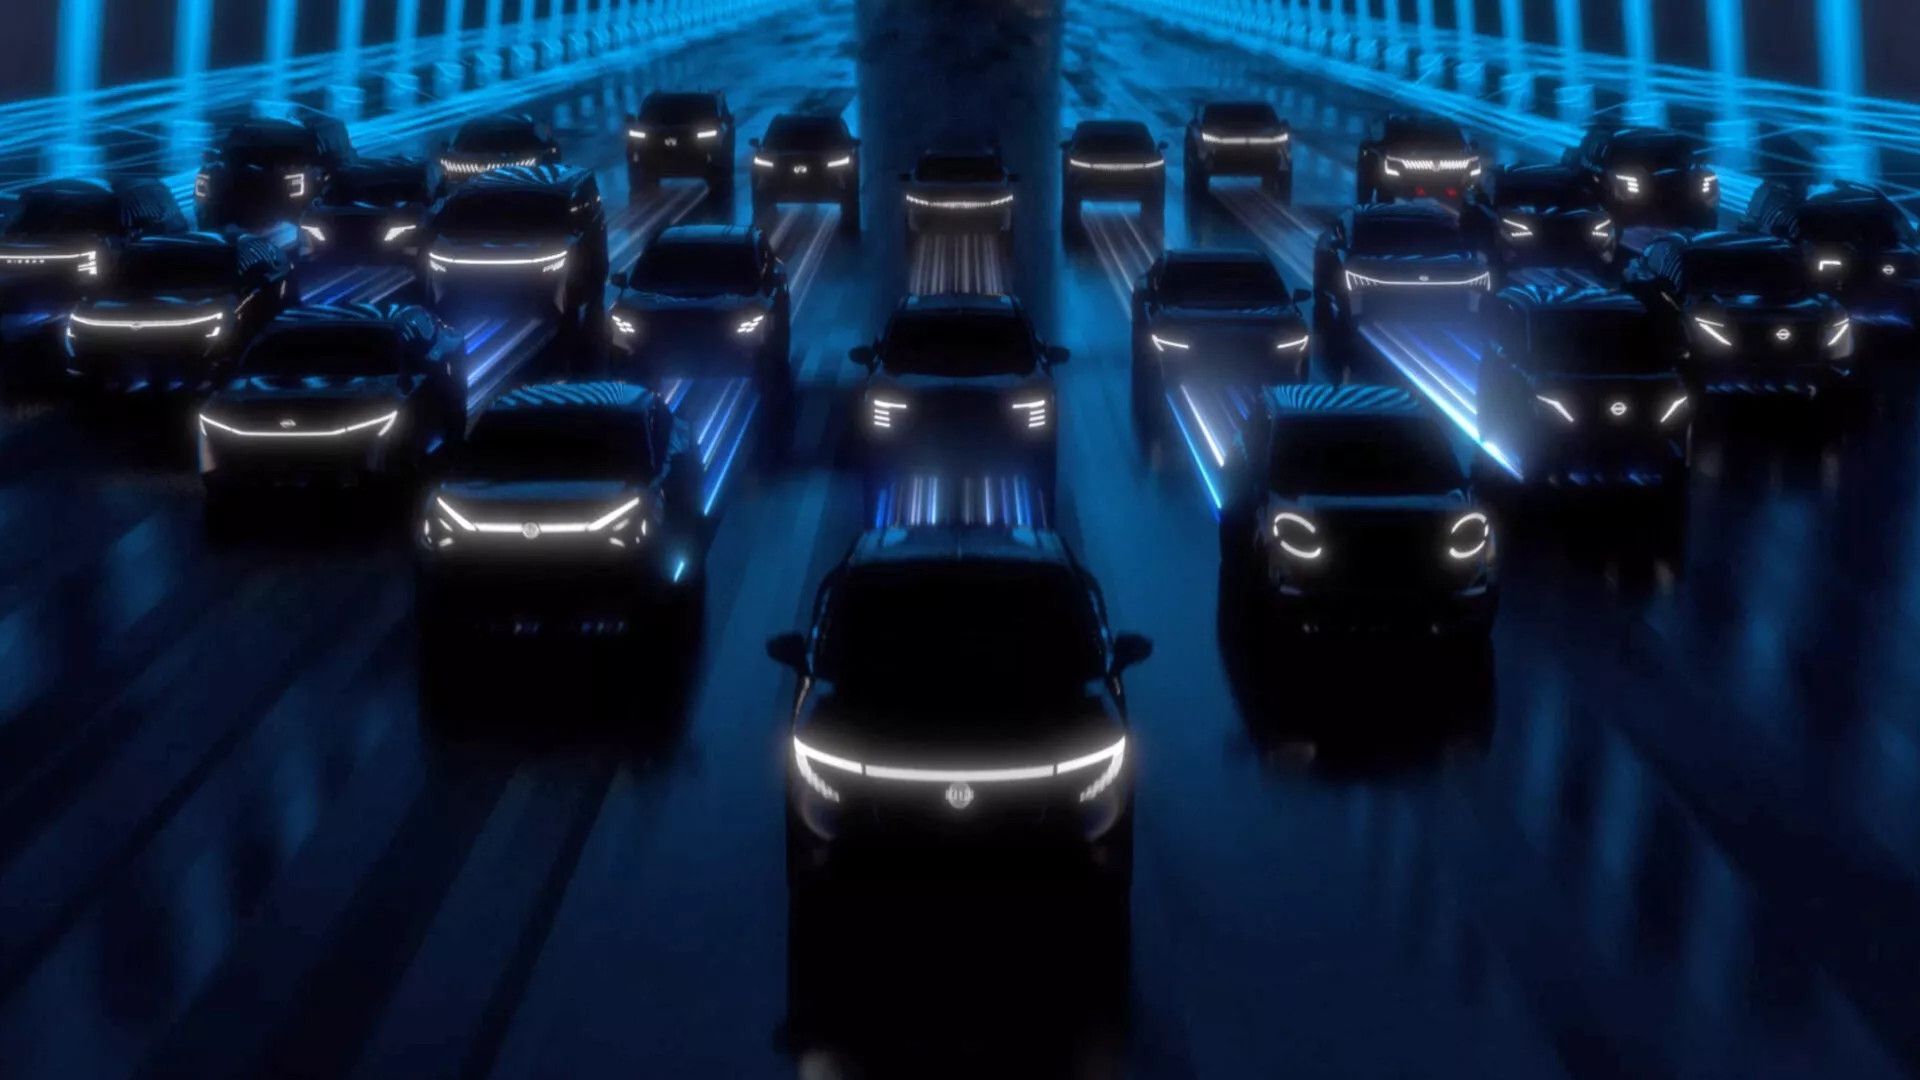 日产在北京车展发布四款全新电动概念车-豁天游|活田酉 一个专门分享有趣的信息，激发人们的求知欲。